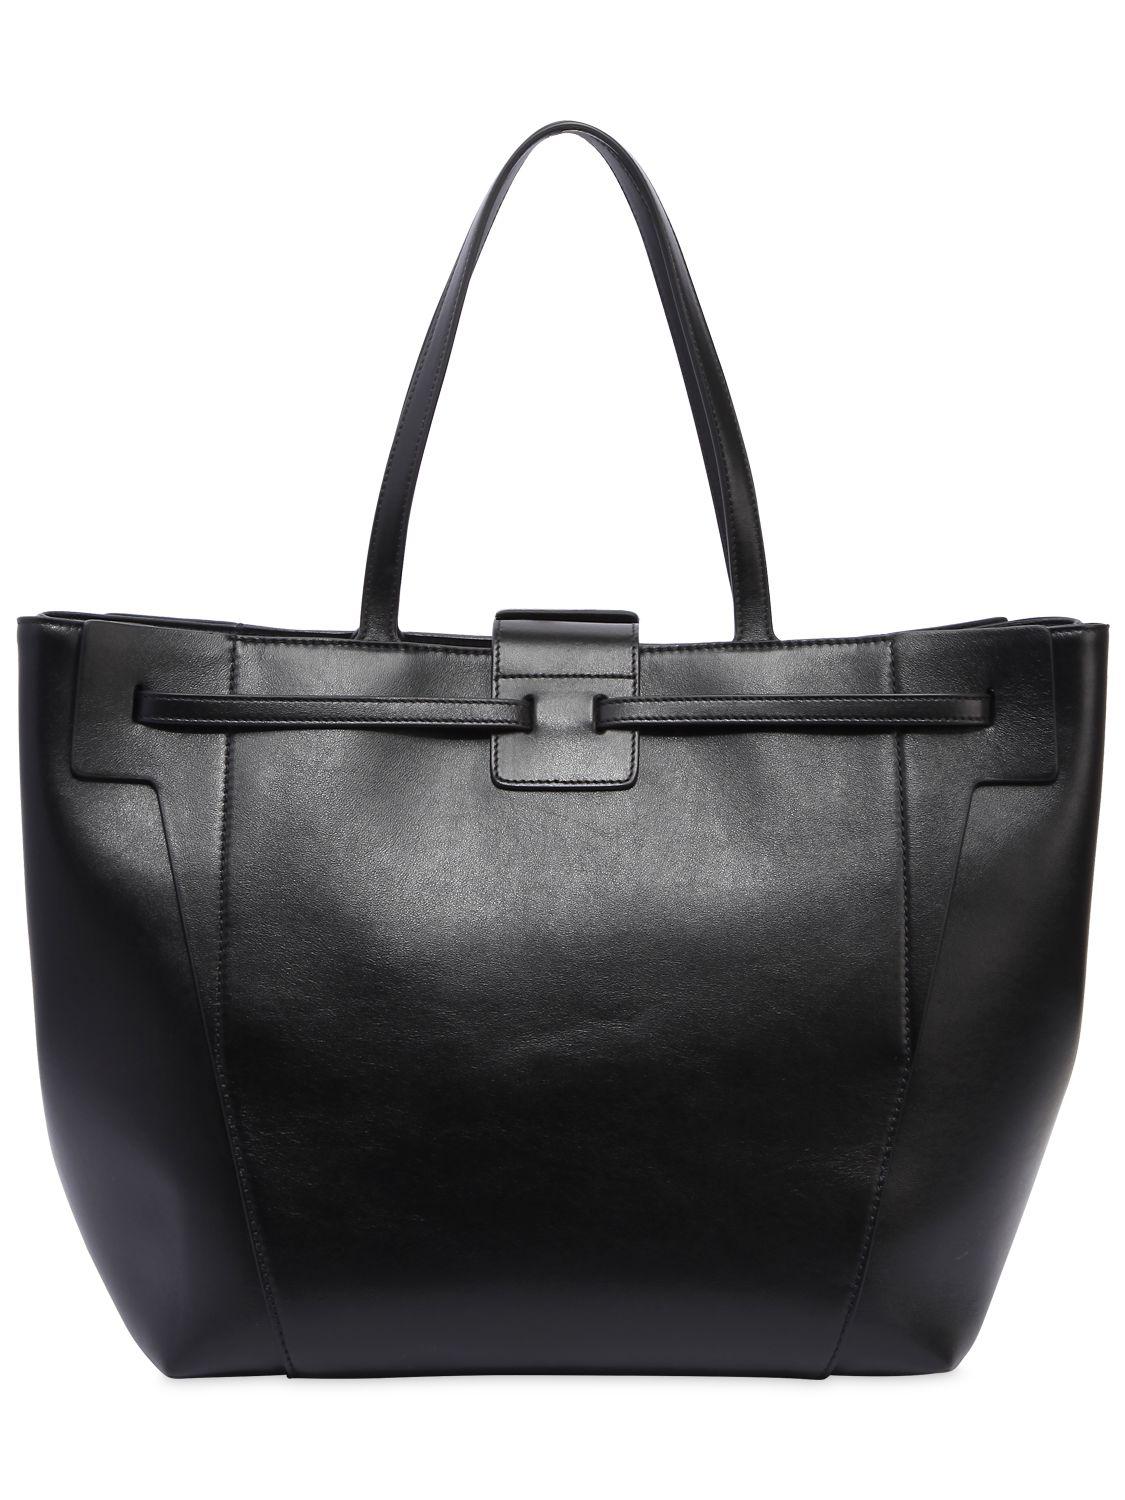 Roger Vivier Large Viv' Leather Tote Bag in Black - Lyst